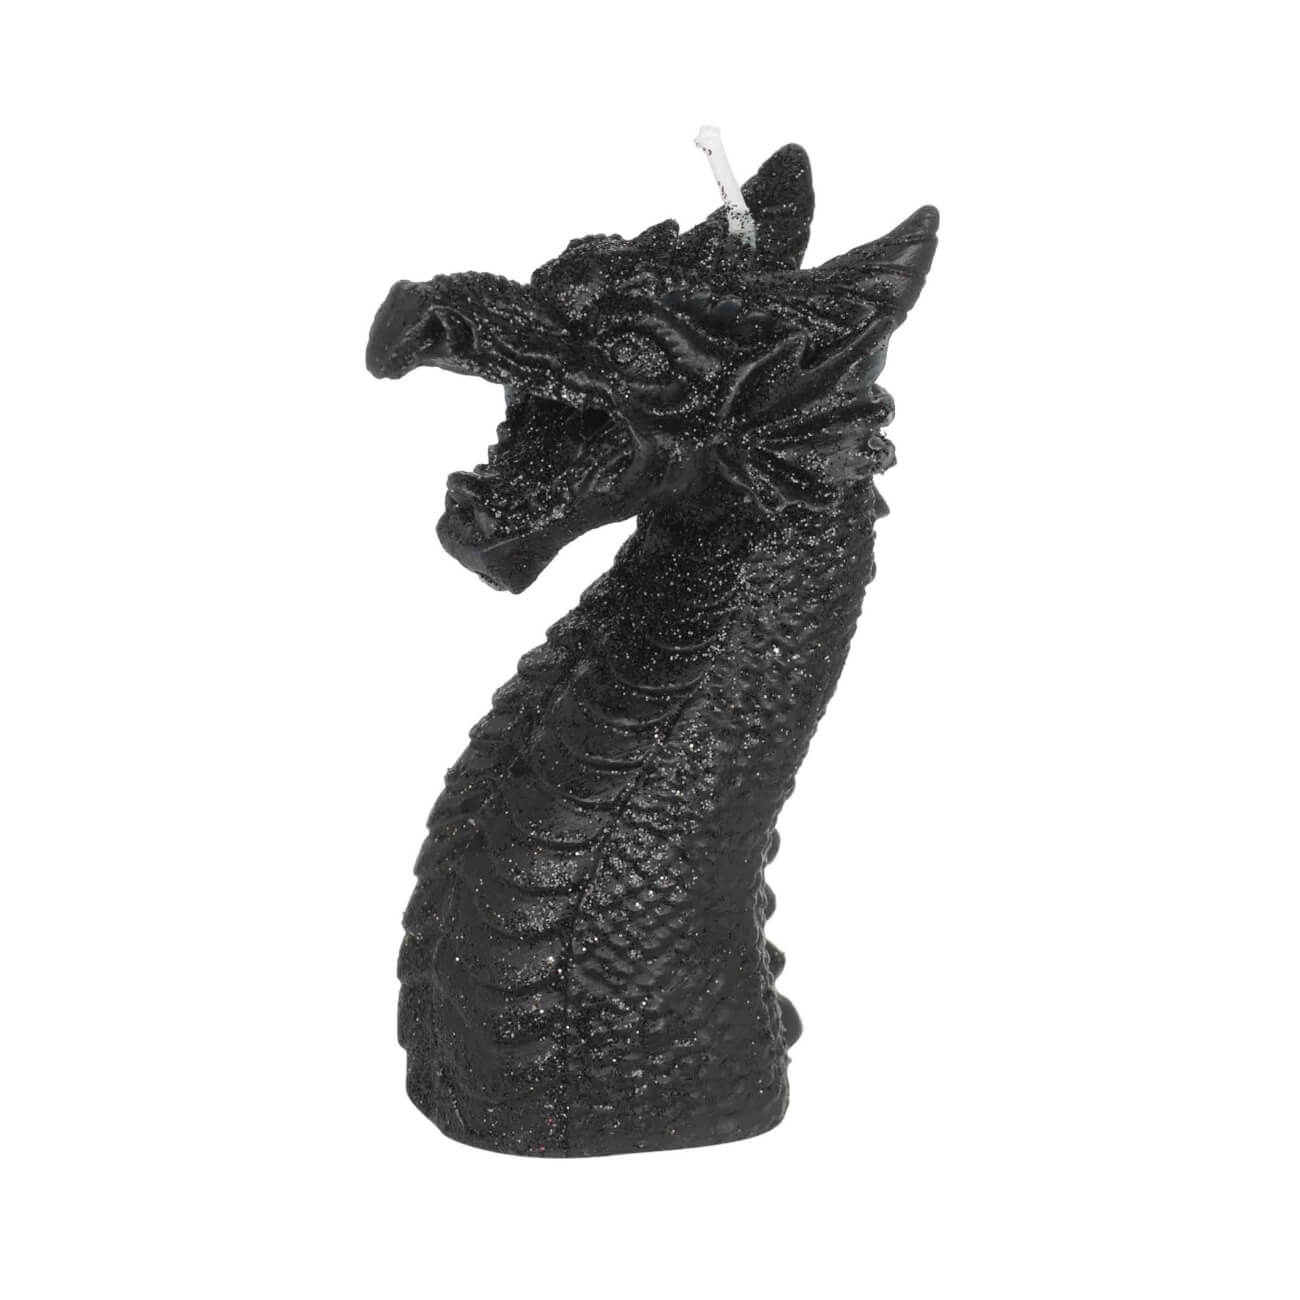 Свеча, 10 см, черная, Дракон, Dragon arrax свеча в гипсе орней черная 9 см